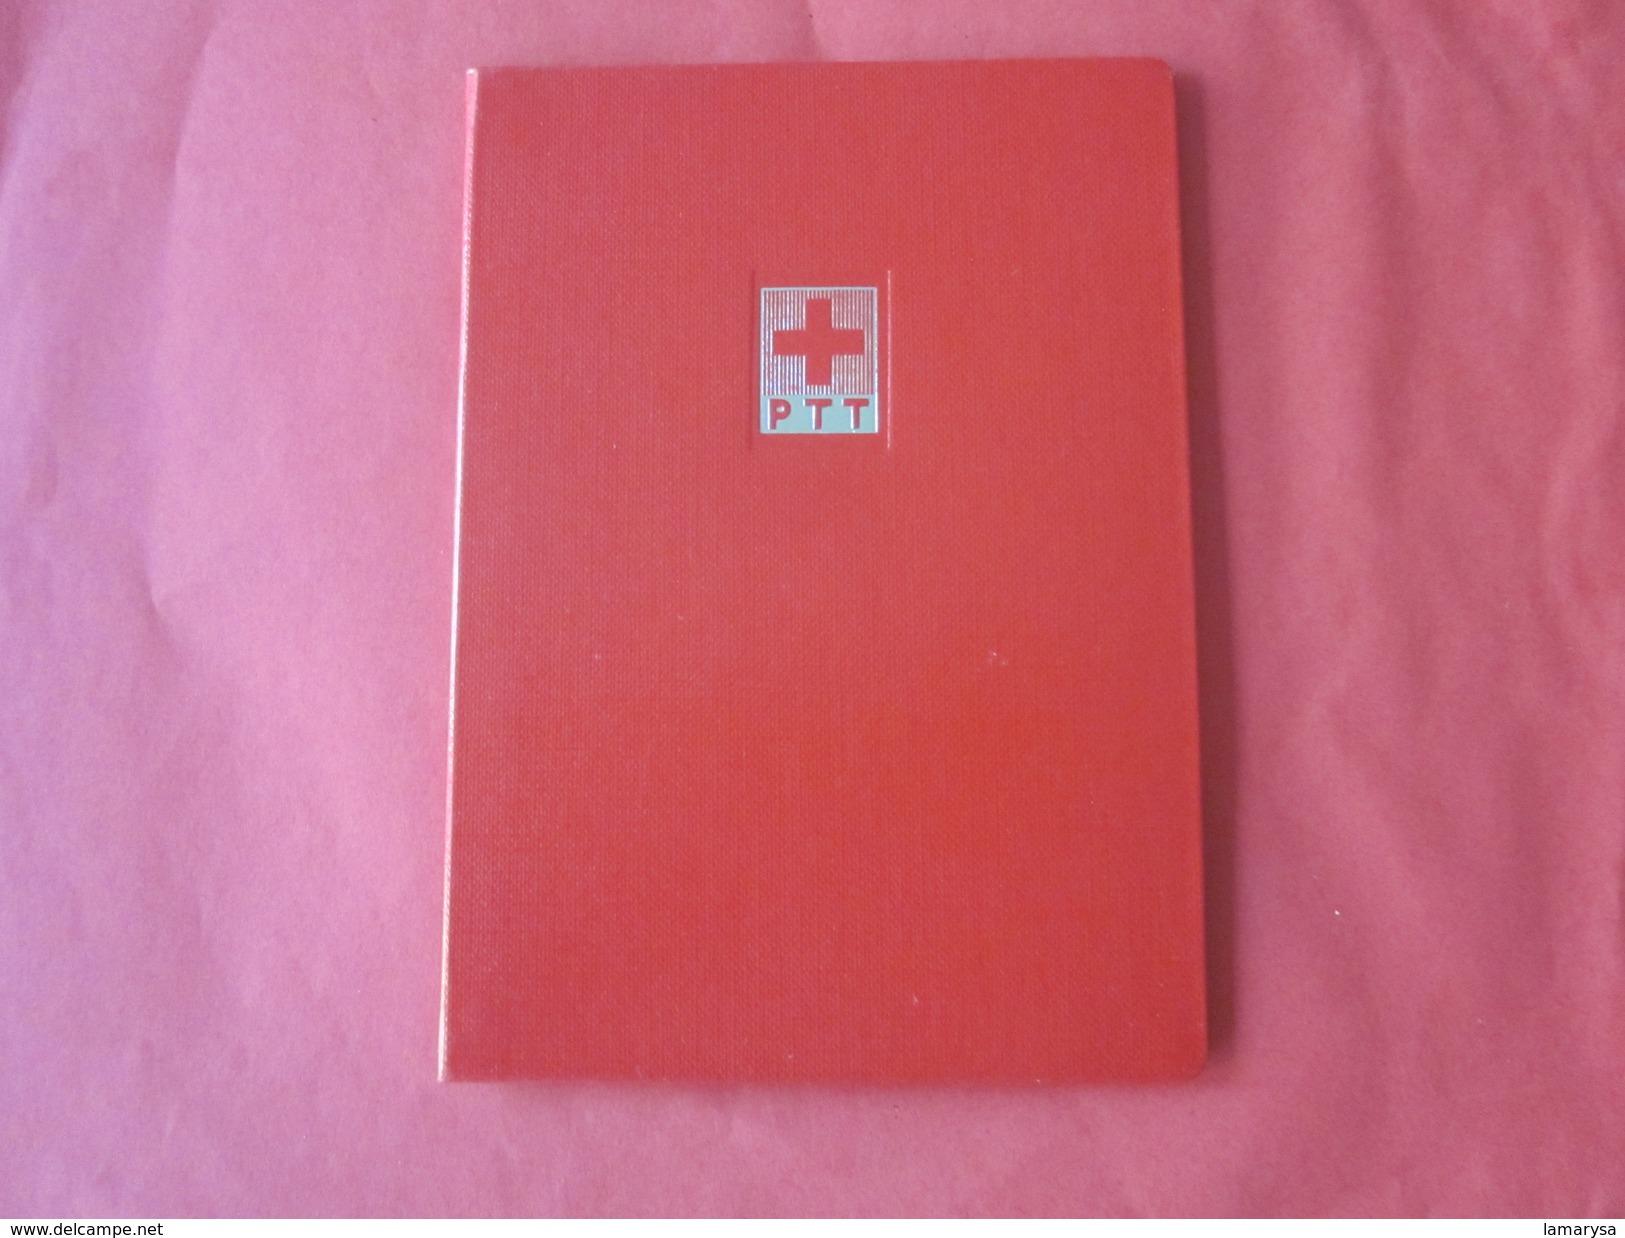 Helvetia Suisse Croix Rouge Matériel,Album Rouge à Bande Pour Timbres Postes Petit Format,fond Blanc Port Postal Offert - Klein Formaat, Blanco Pagina